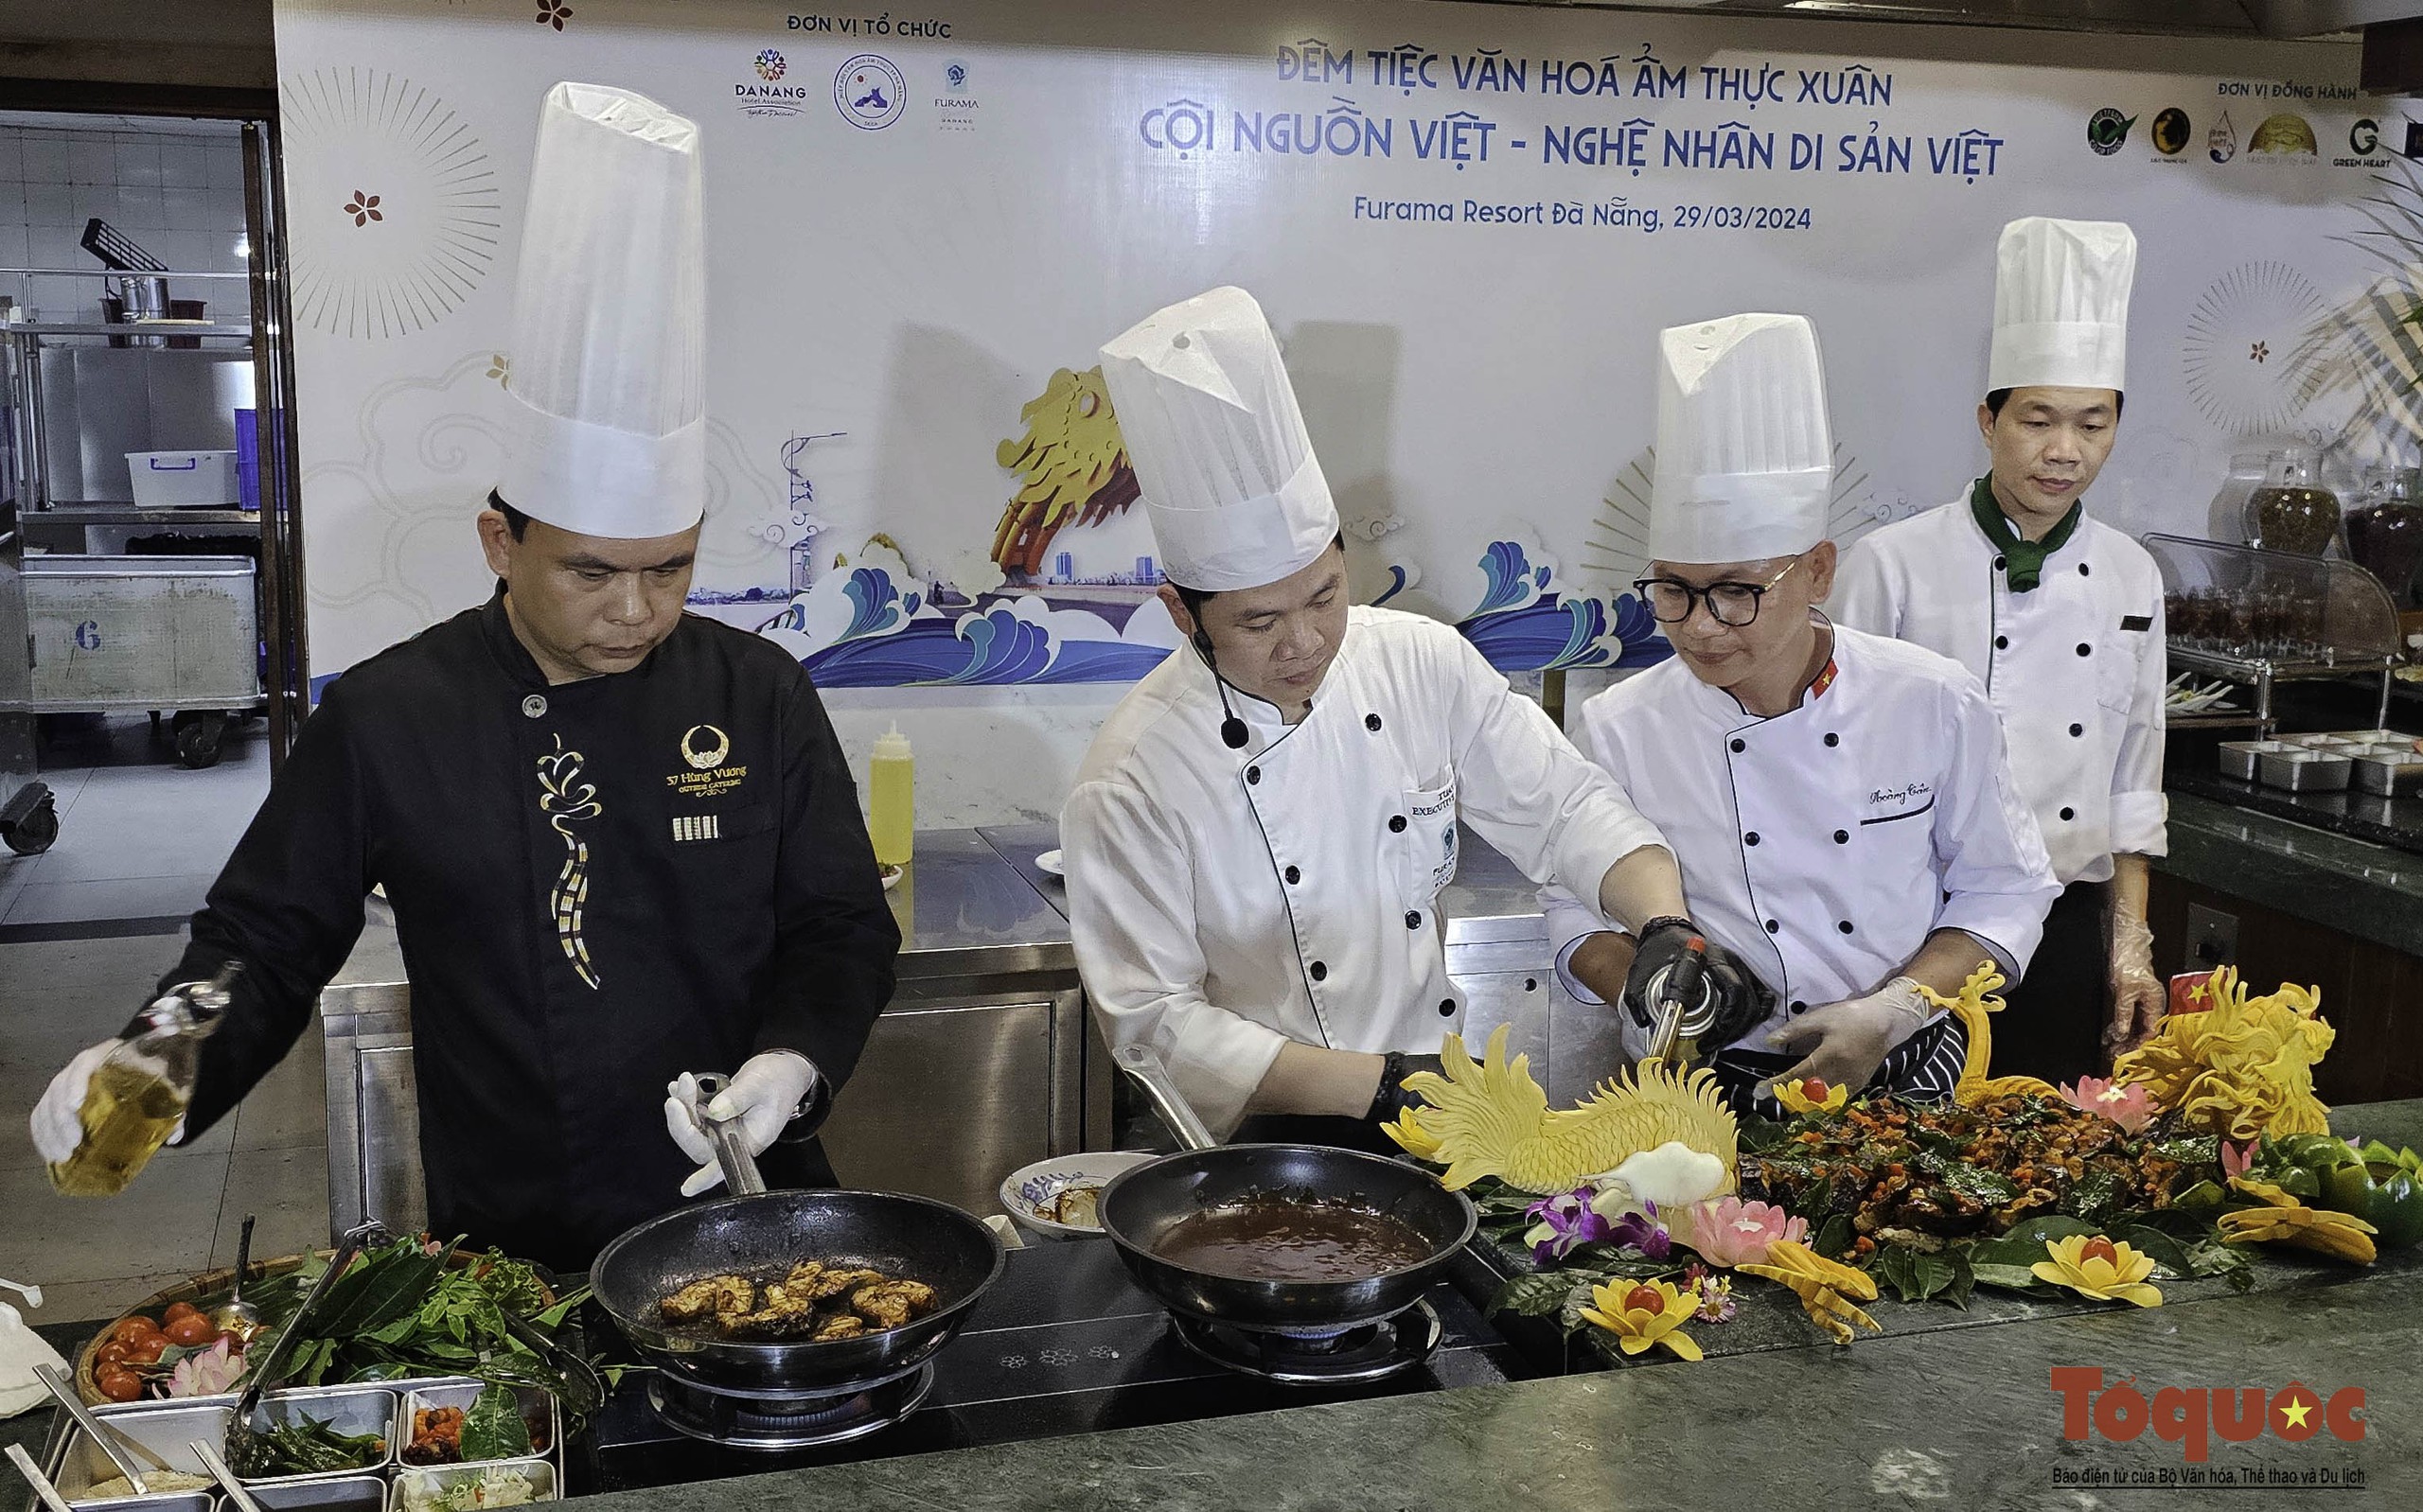 Xem các nghệ nhân ẩm thực hàng đầu Việt Nam quảng diễn những tinh hoa món ngon 3 miền - Ảnh 2.